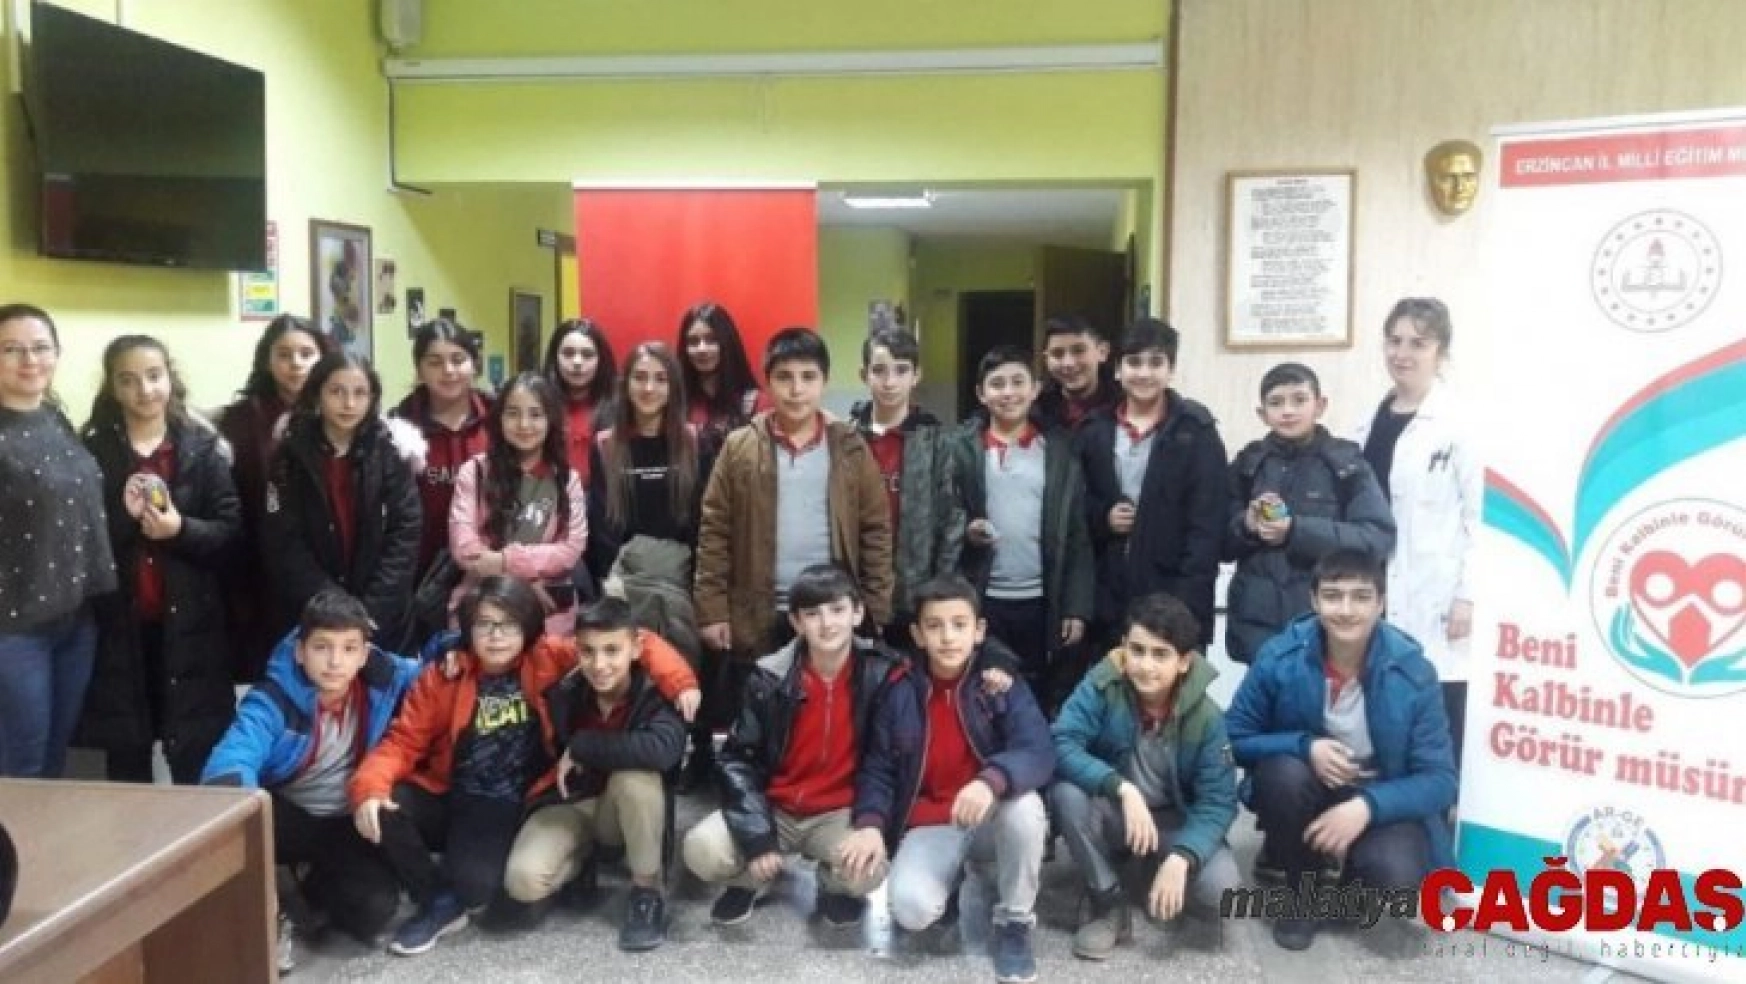 Erzincan'da 'Beni Kalbinle Görür müsün' projesi devam ediyor